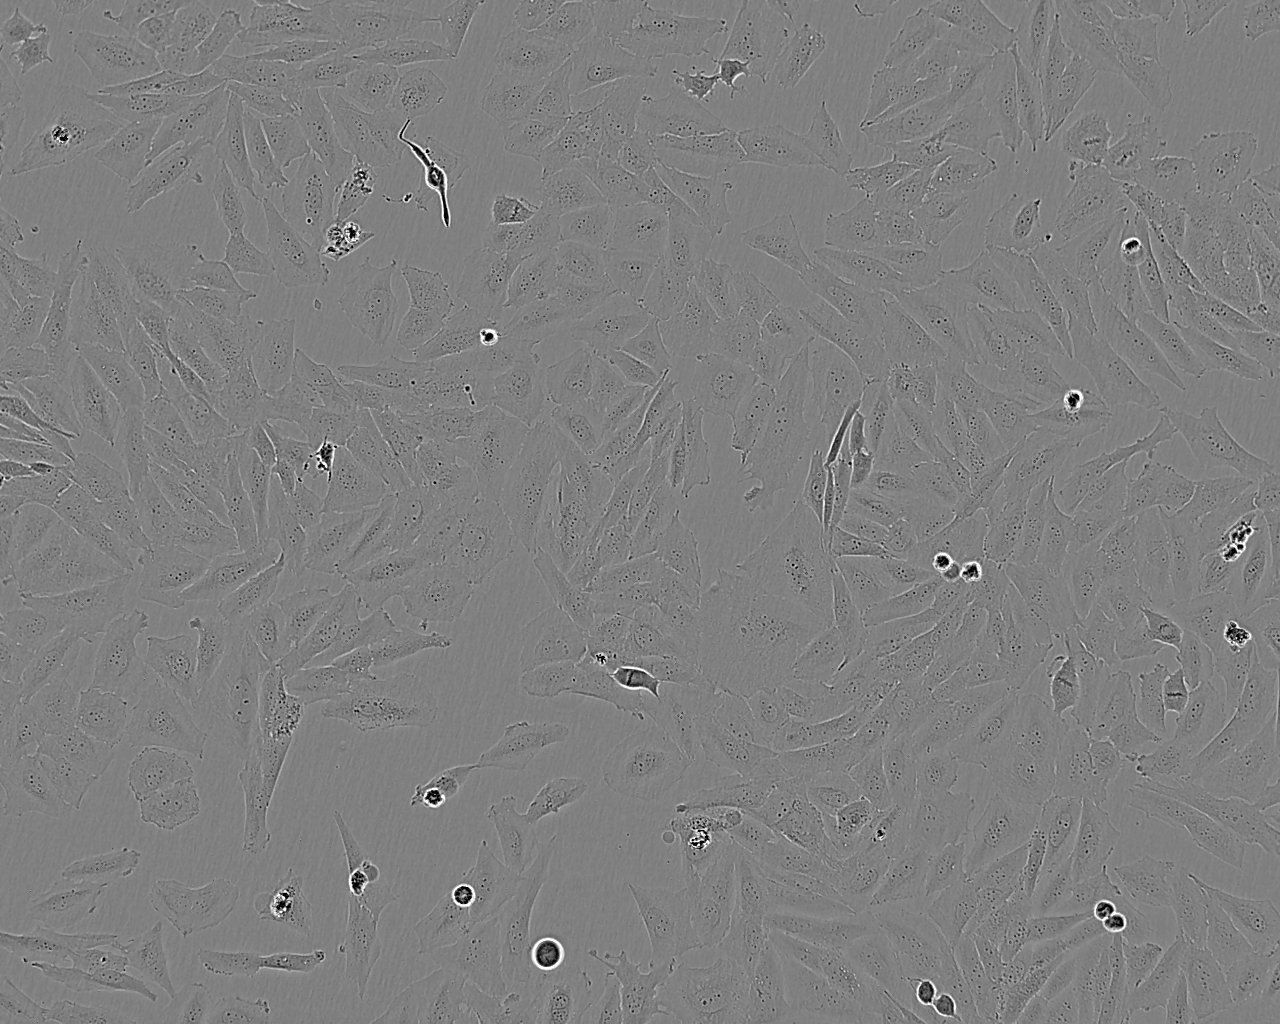 NCI-H69 epithelioid cells人小细胞肺癌细胞系